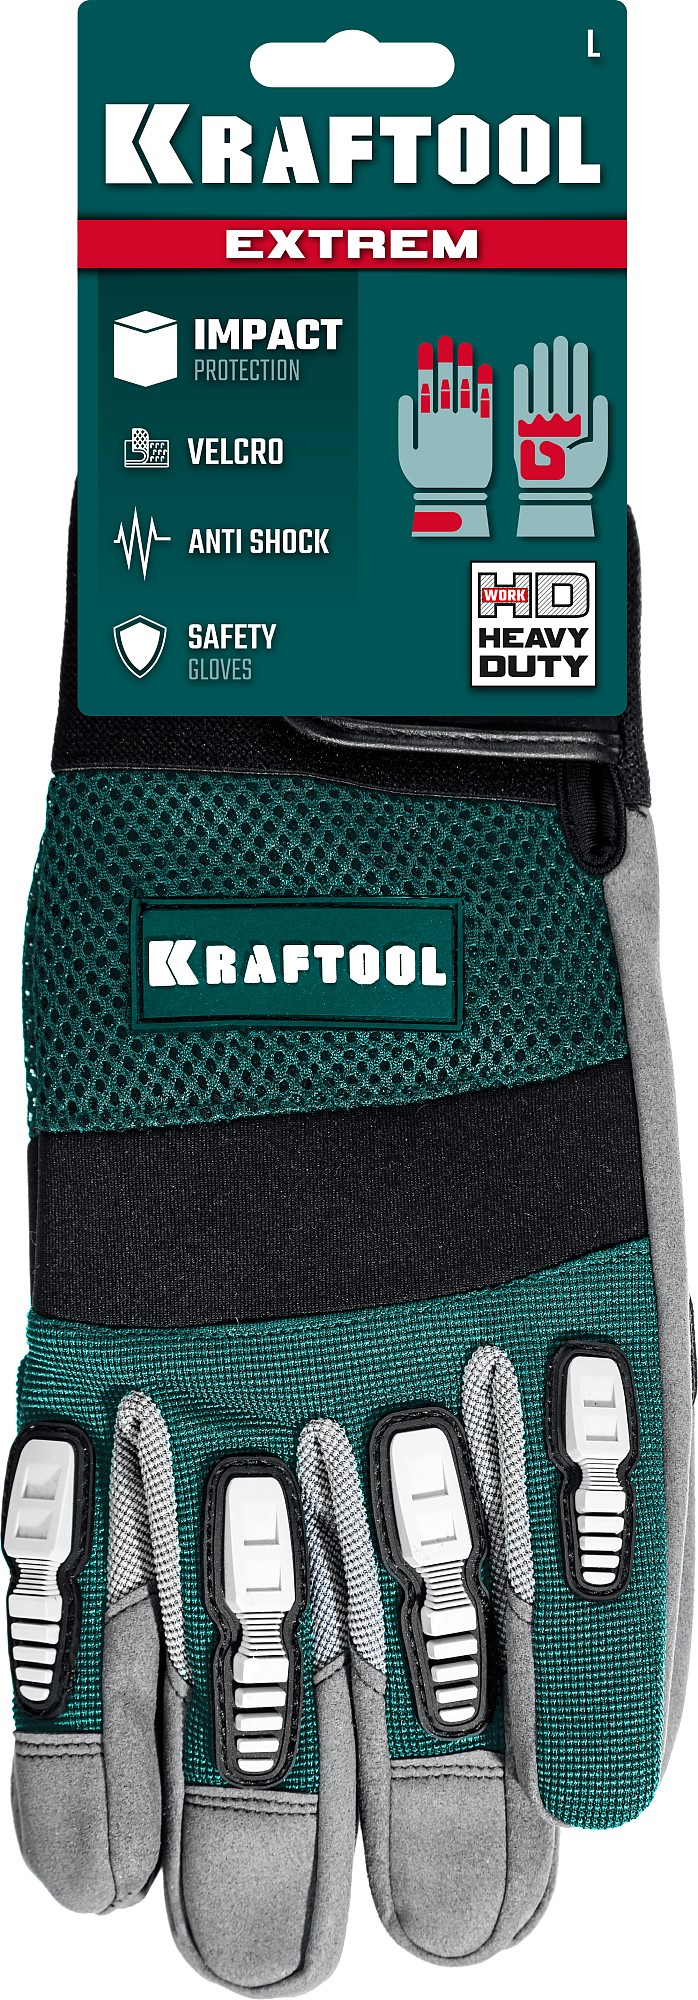 KRAFTOOL EXTREM, L, для тяжелых мех. Работ, антивибрационные, с резиновыми накладками, профессиональные комбинированные перчатки (11287-L)